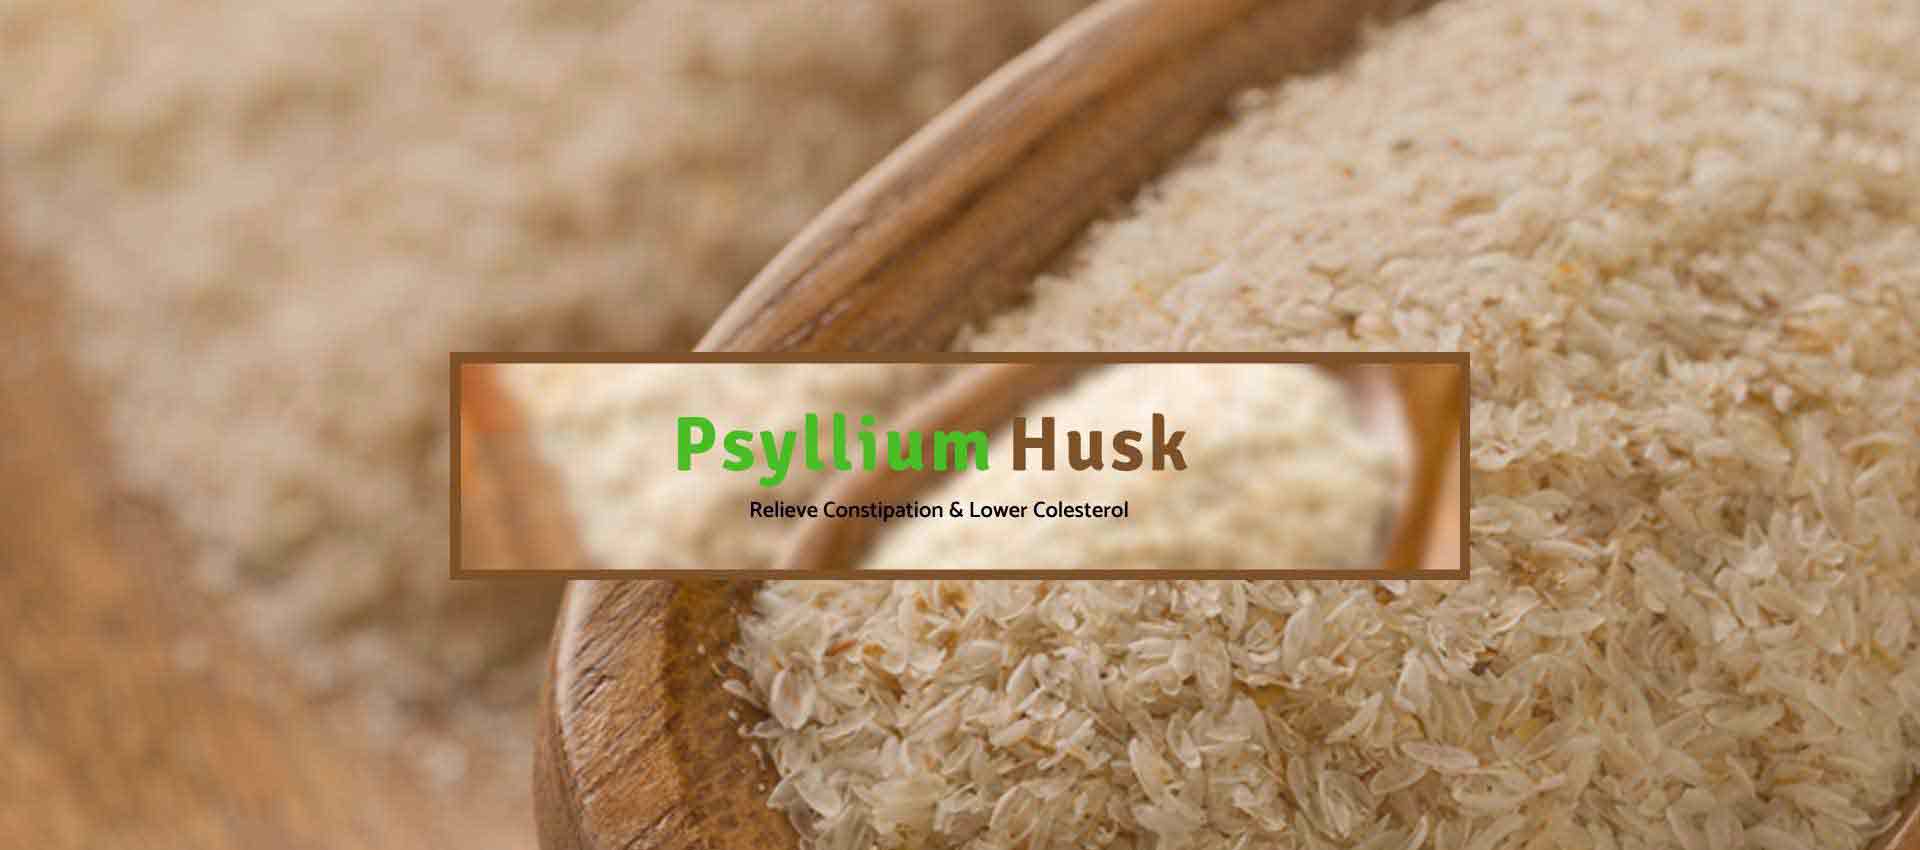 Psyllium Husk Manufacturers in Toronto